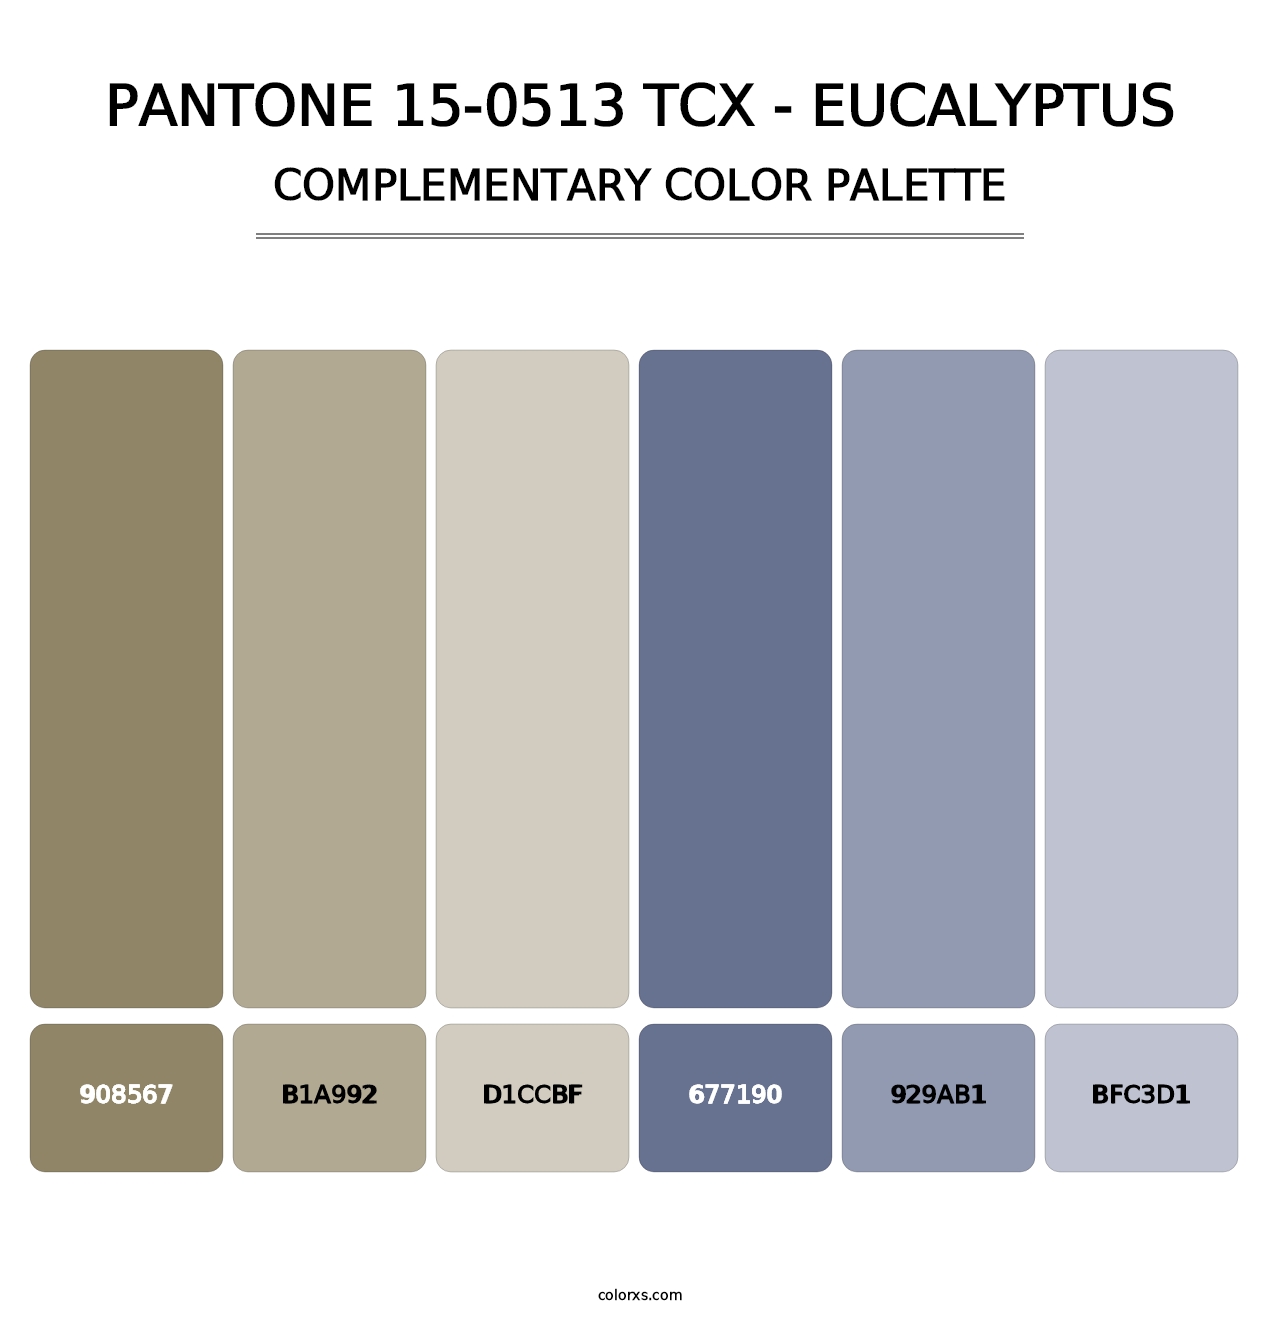 PANTONE 15-0513 TCX - Eucalyptus - Complementary Color Palette